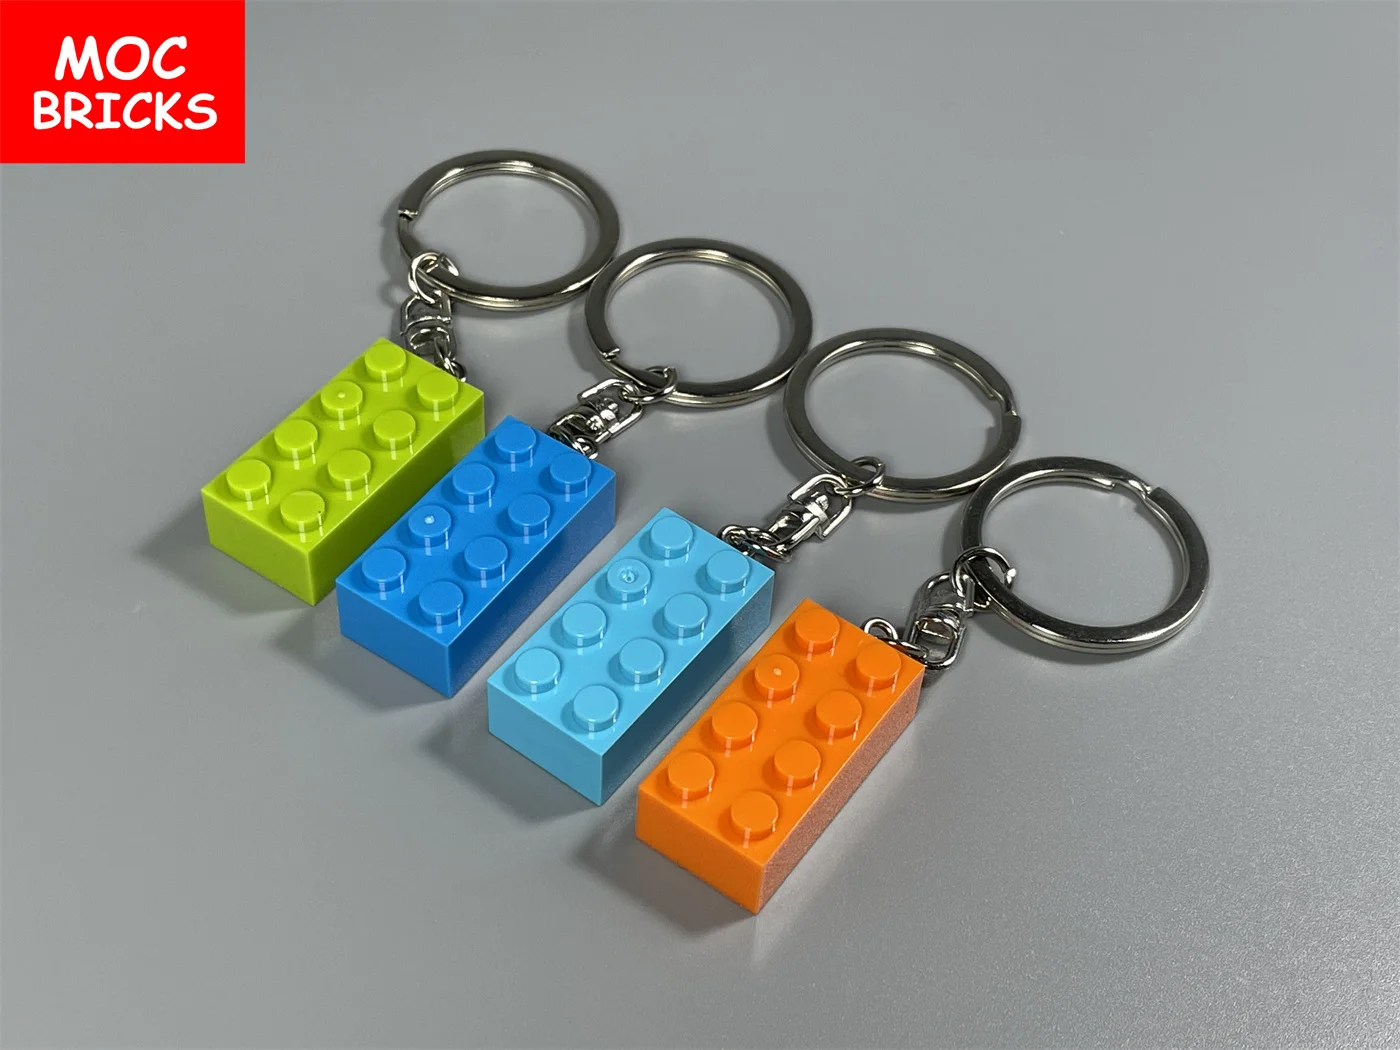 4шт MOC Bricks Красочный Брелок для ключей 2x4 3020 Развивающие Строительные Блоки, Аксессуары, Подарок на День рождения, Детские Игрушки Изображение 1